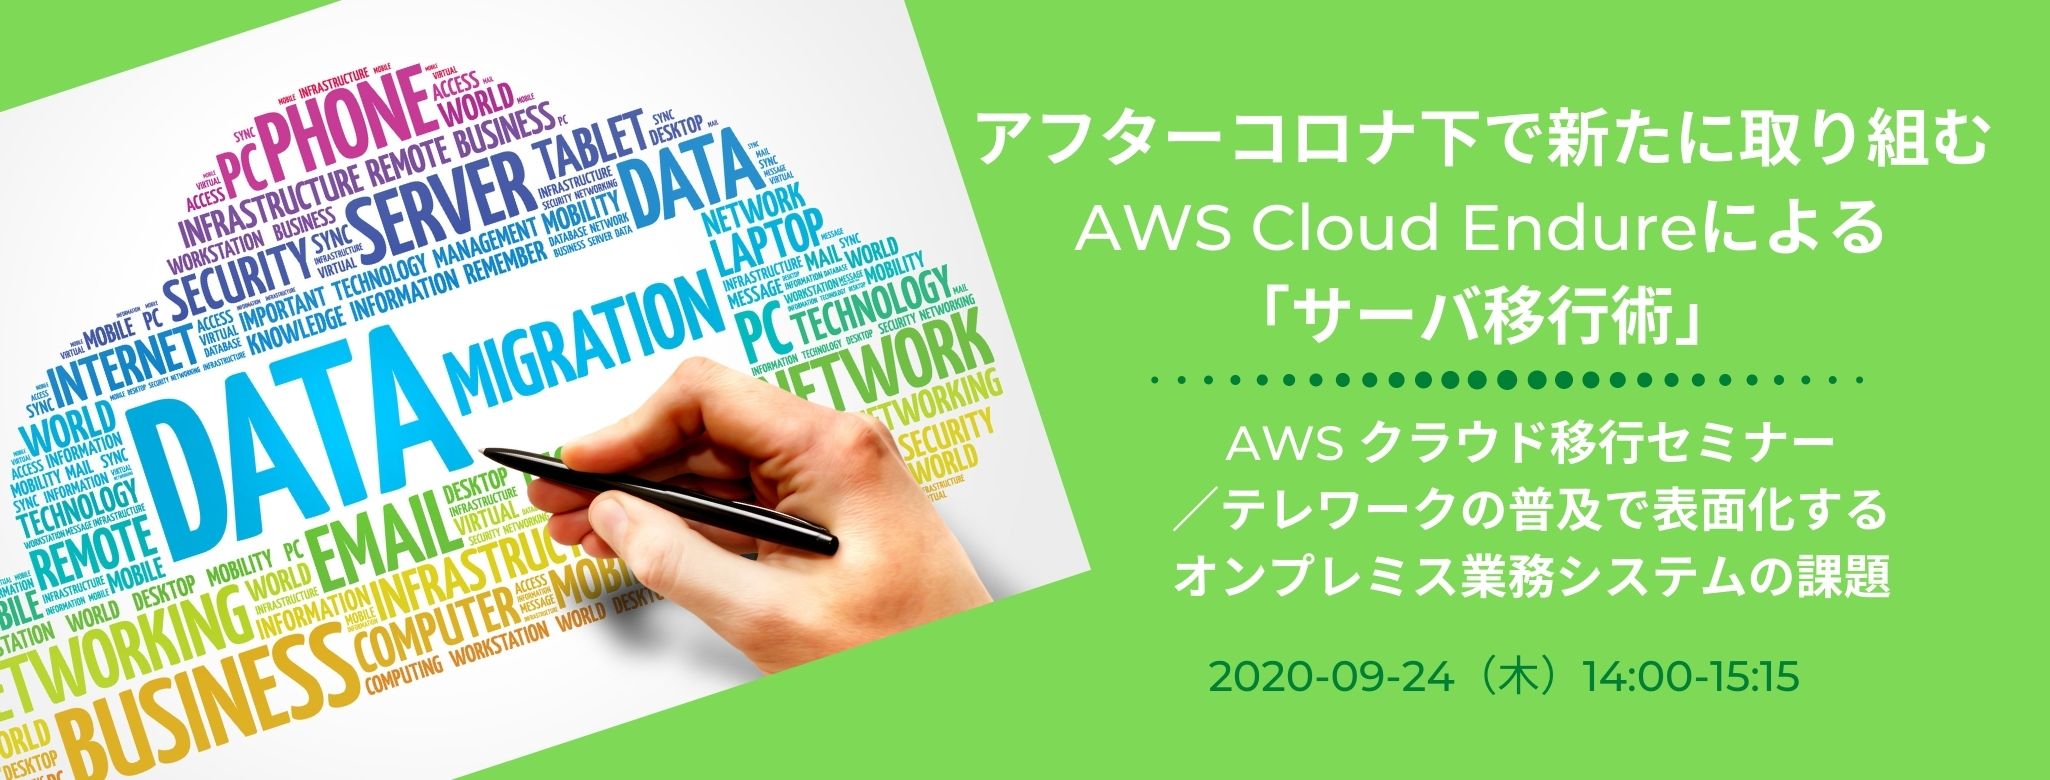  アフターコロナ下で新たに取り組む AWS Cloud Endureによる「サーバ移行術」 AWS クラウド移行セミナー／テレワークの普及で表面化するオンプレミス業務システムの課題